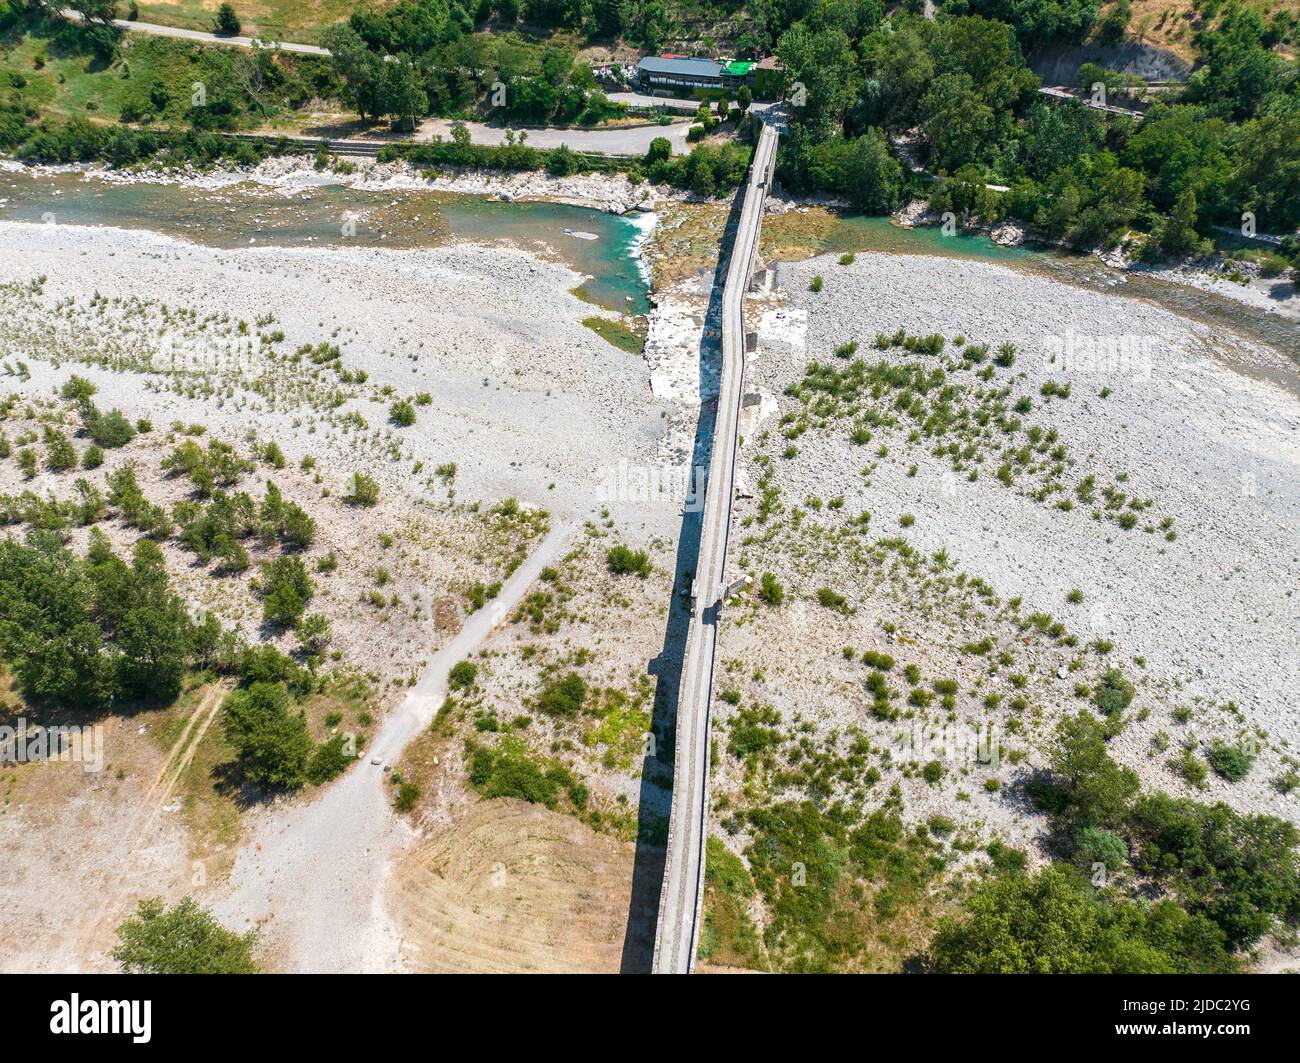 Luftaufnahme. Trockenheit und trockene Flüsse. Römische Brücke von Bobbio über den Fluss Trebbia, Piacenza, Emilia-Romagna. Italien. 06-16-2022. Flussbett mit Steinen Stockfoto